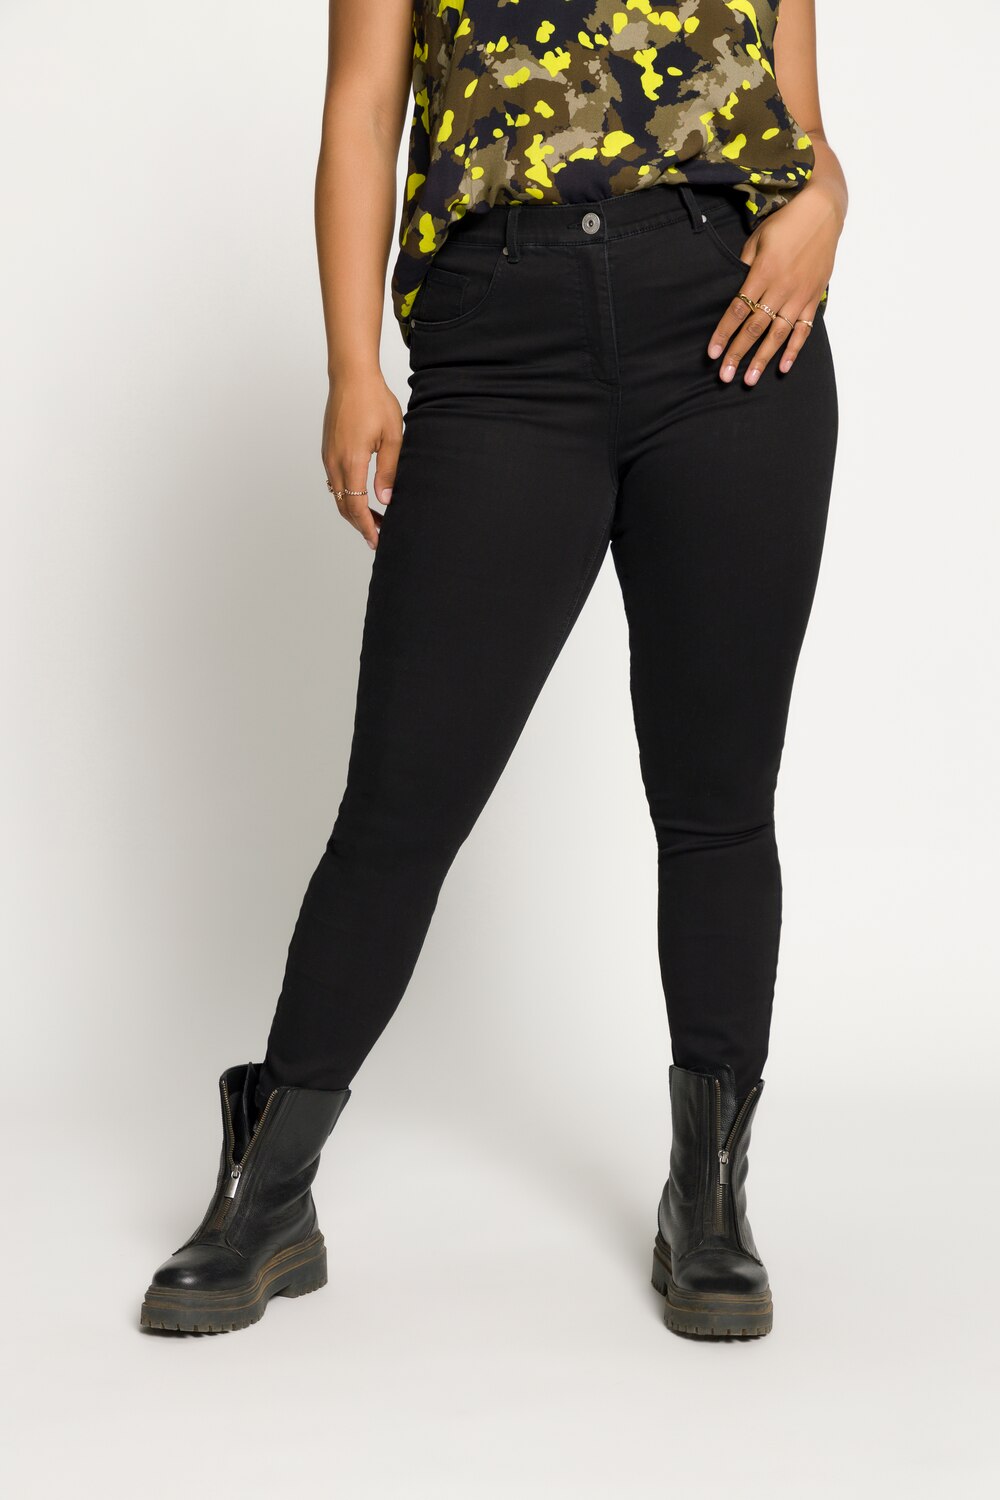 Grote Maten skinny jeans, Dames, zwart, Maat: 58, Katoen/Polyester, Studio Untold